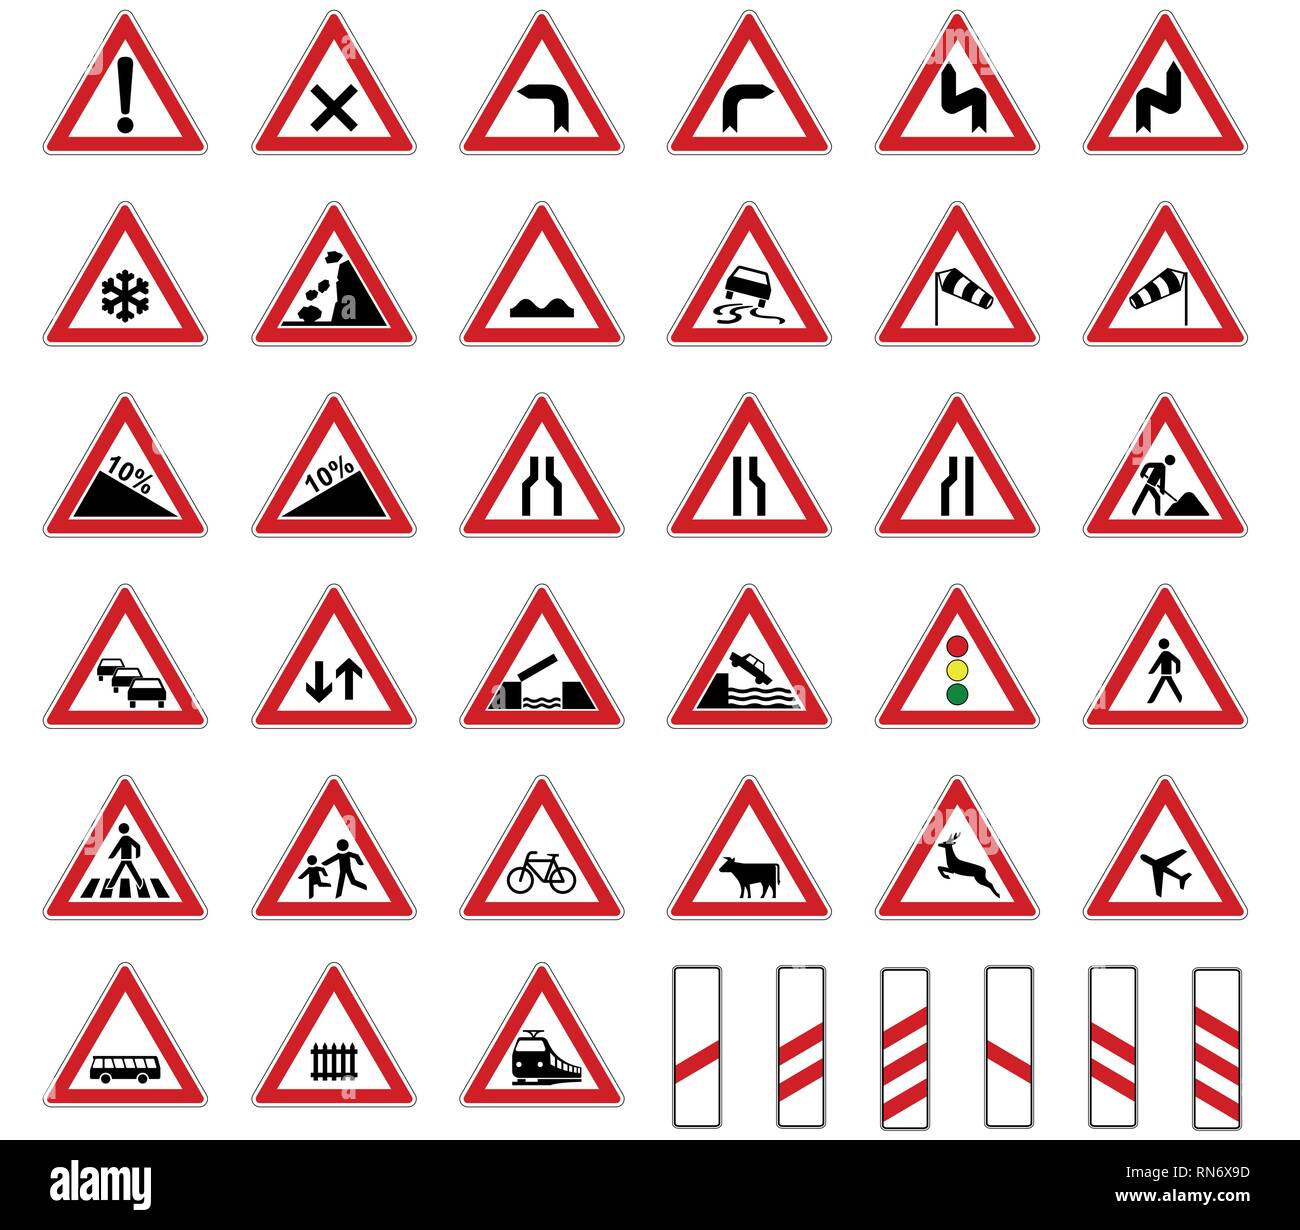 Europa stradale segnaletica vettore raccolta isolati su sfondo bianco Illustrazione Vettoriale